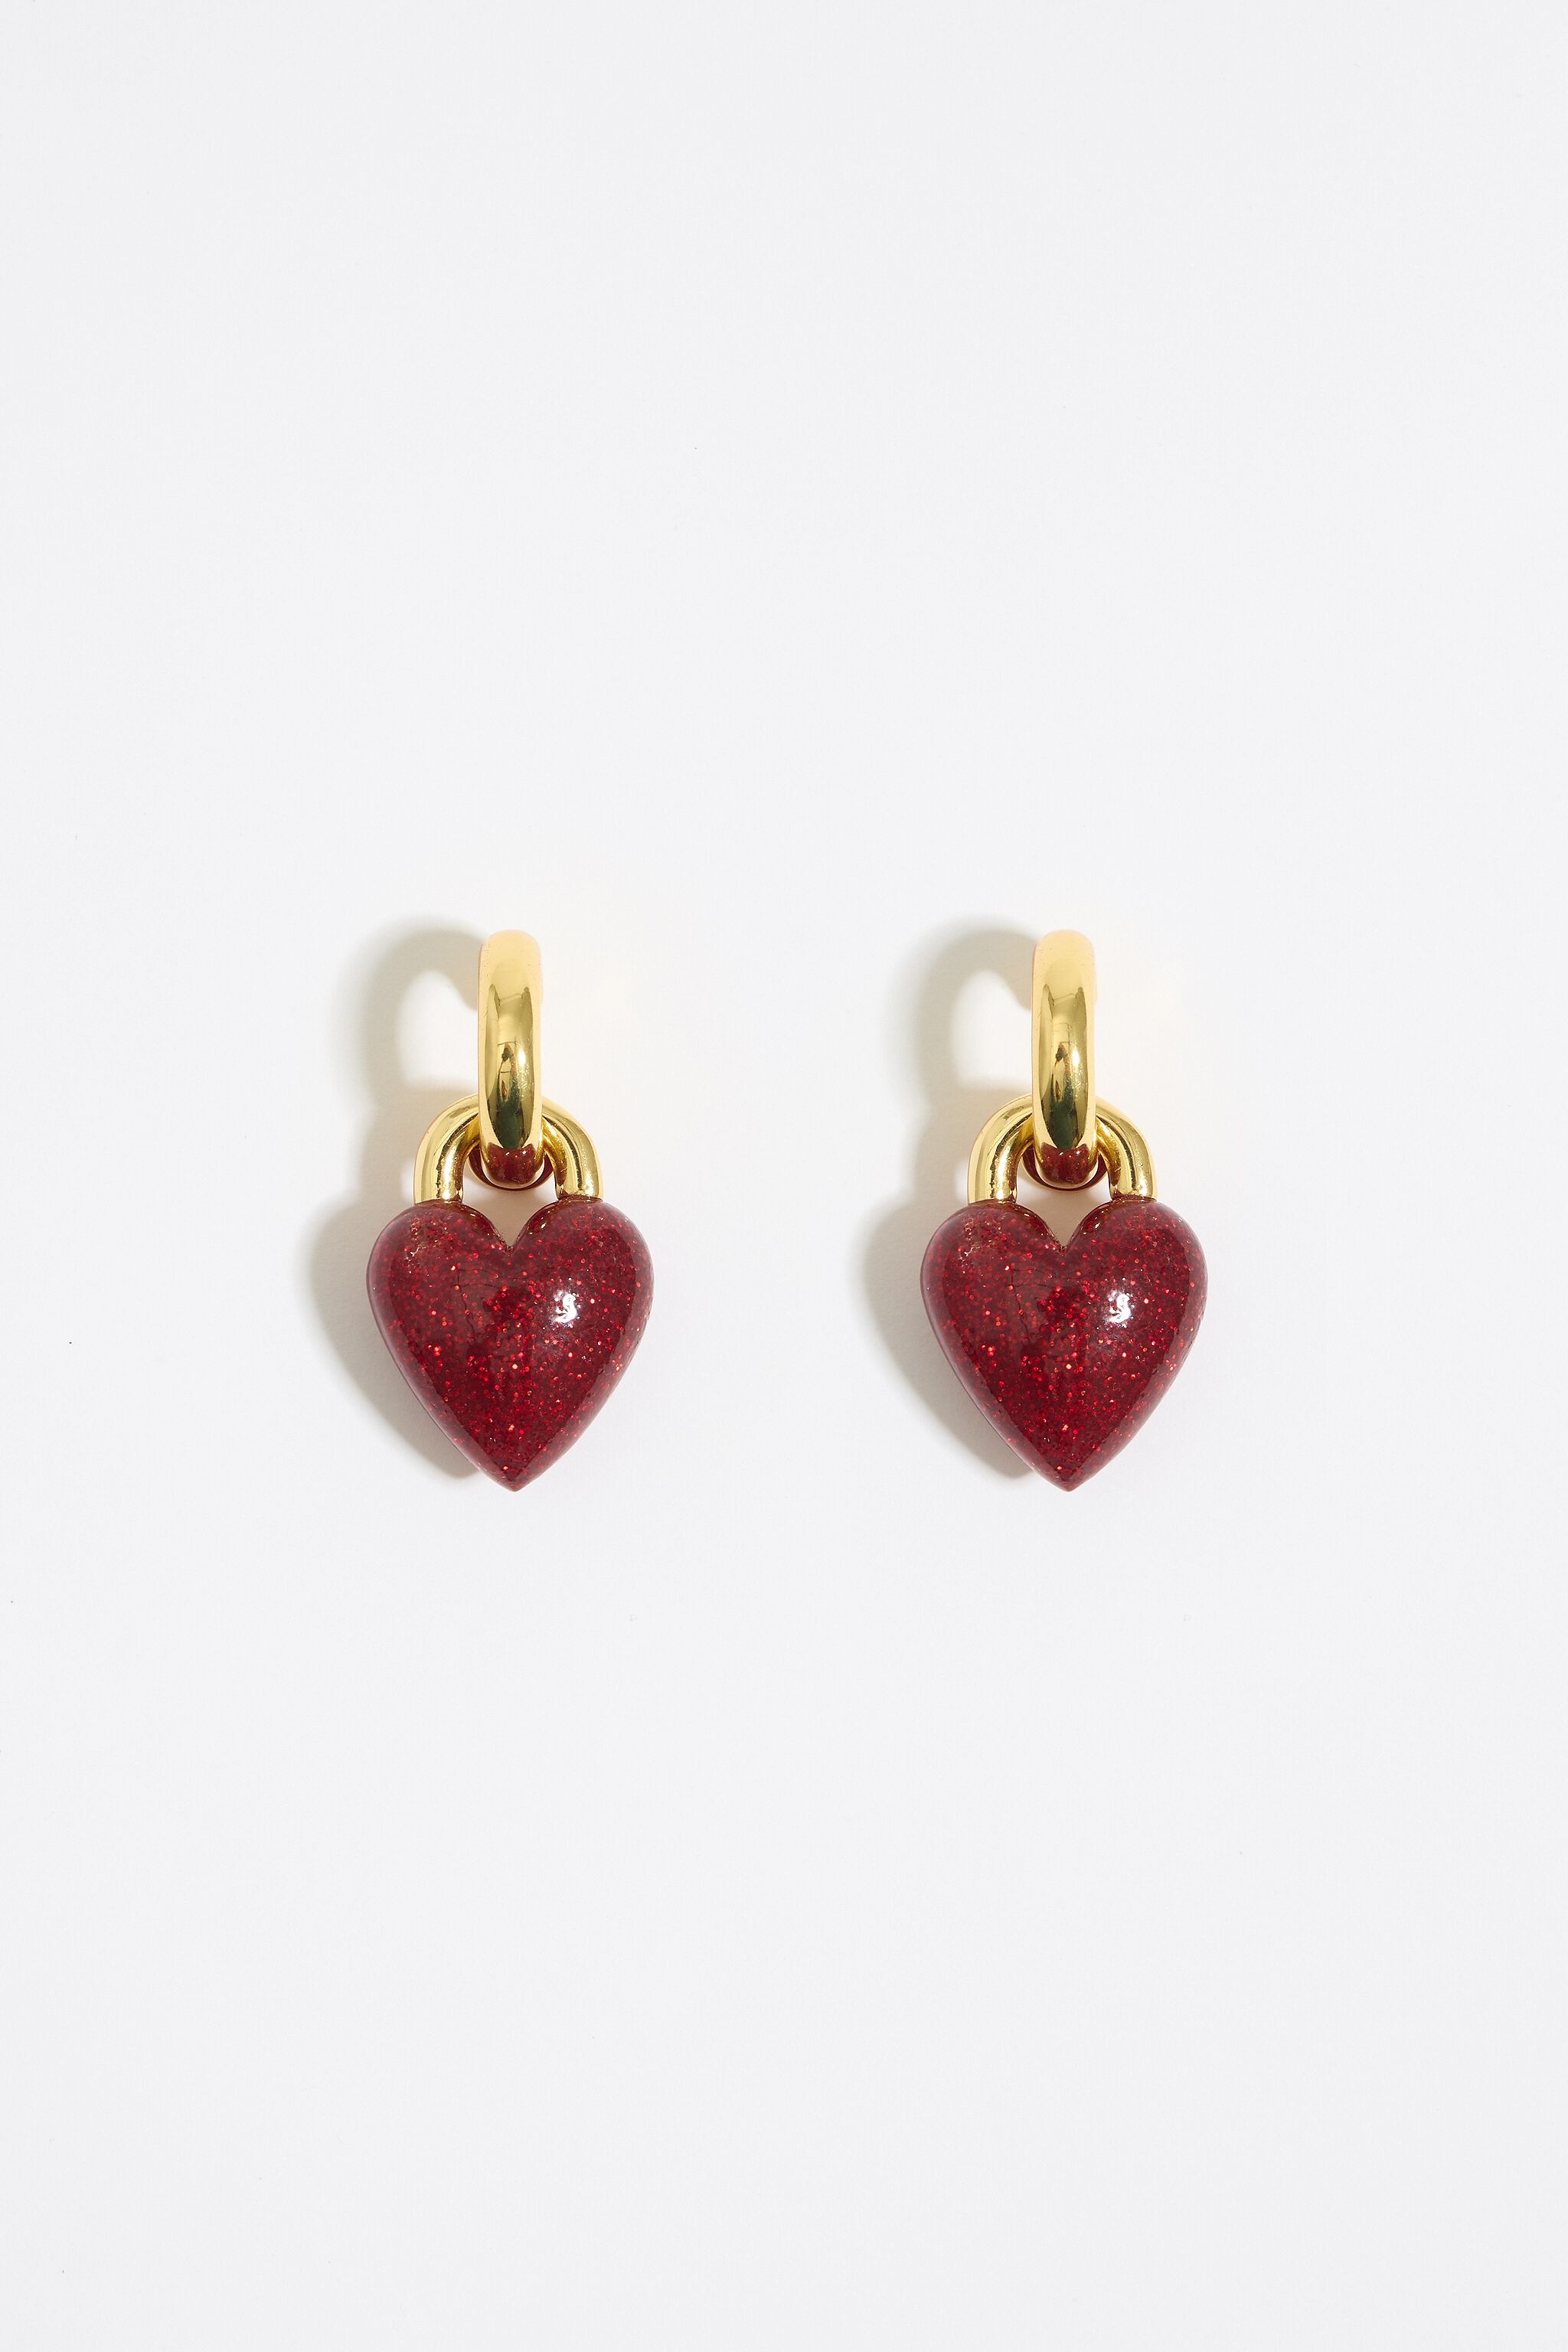 Hoop earrings with red glitter heart